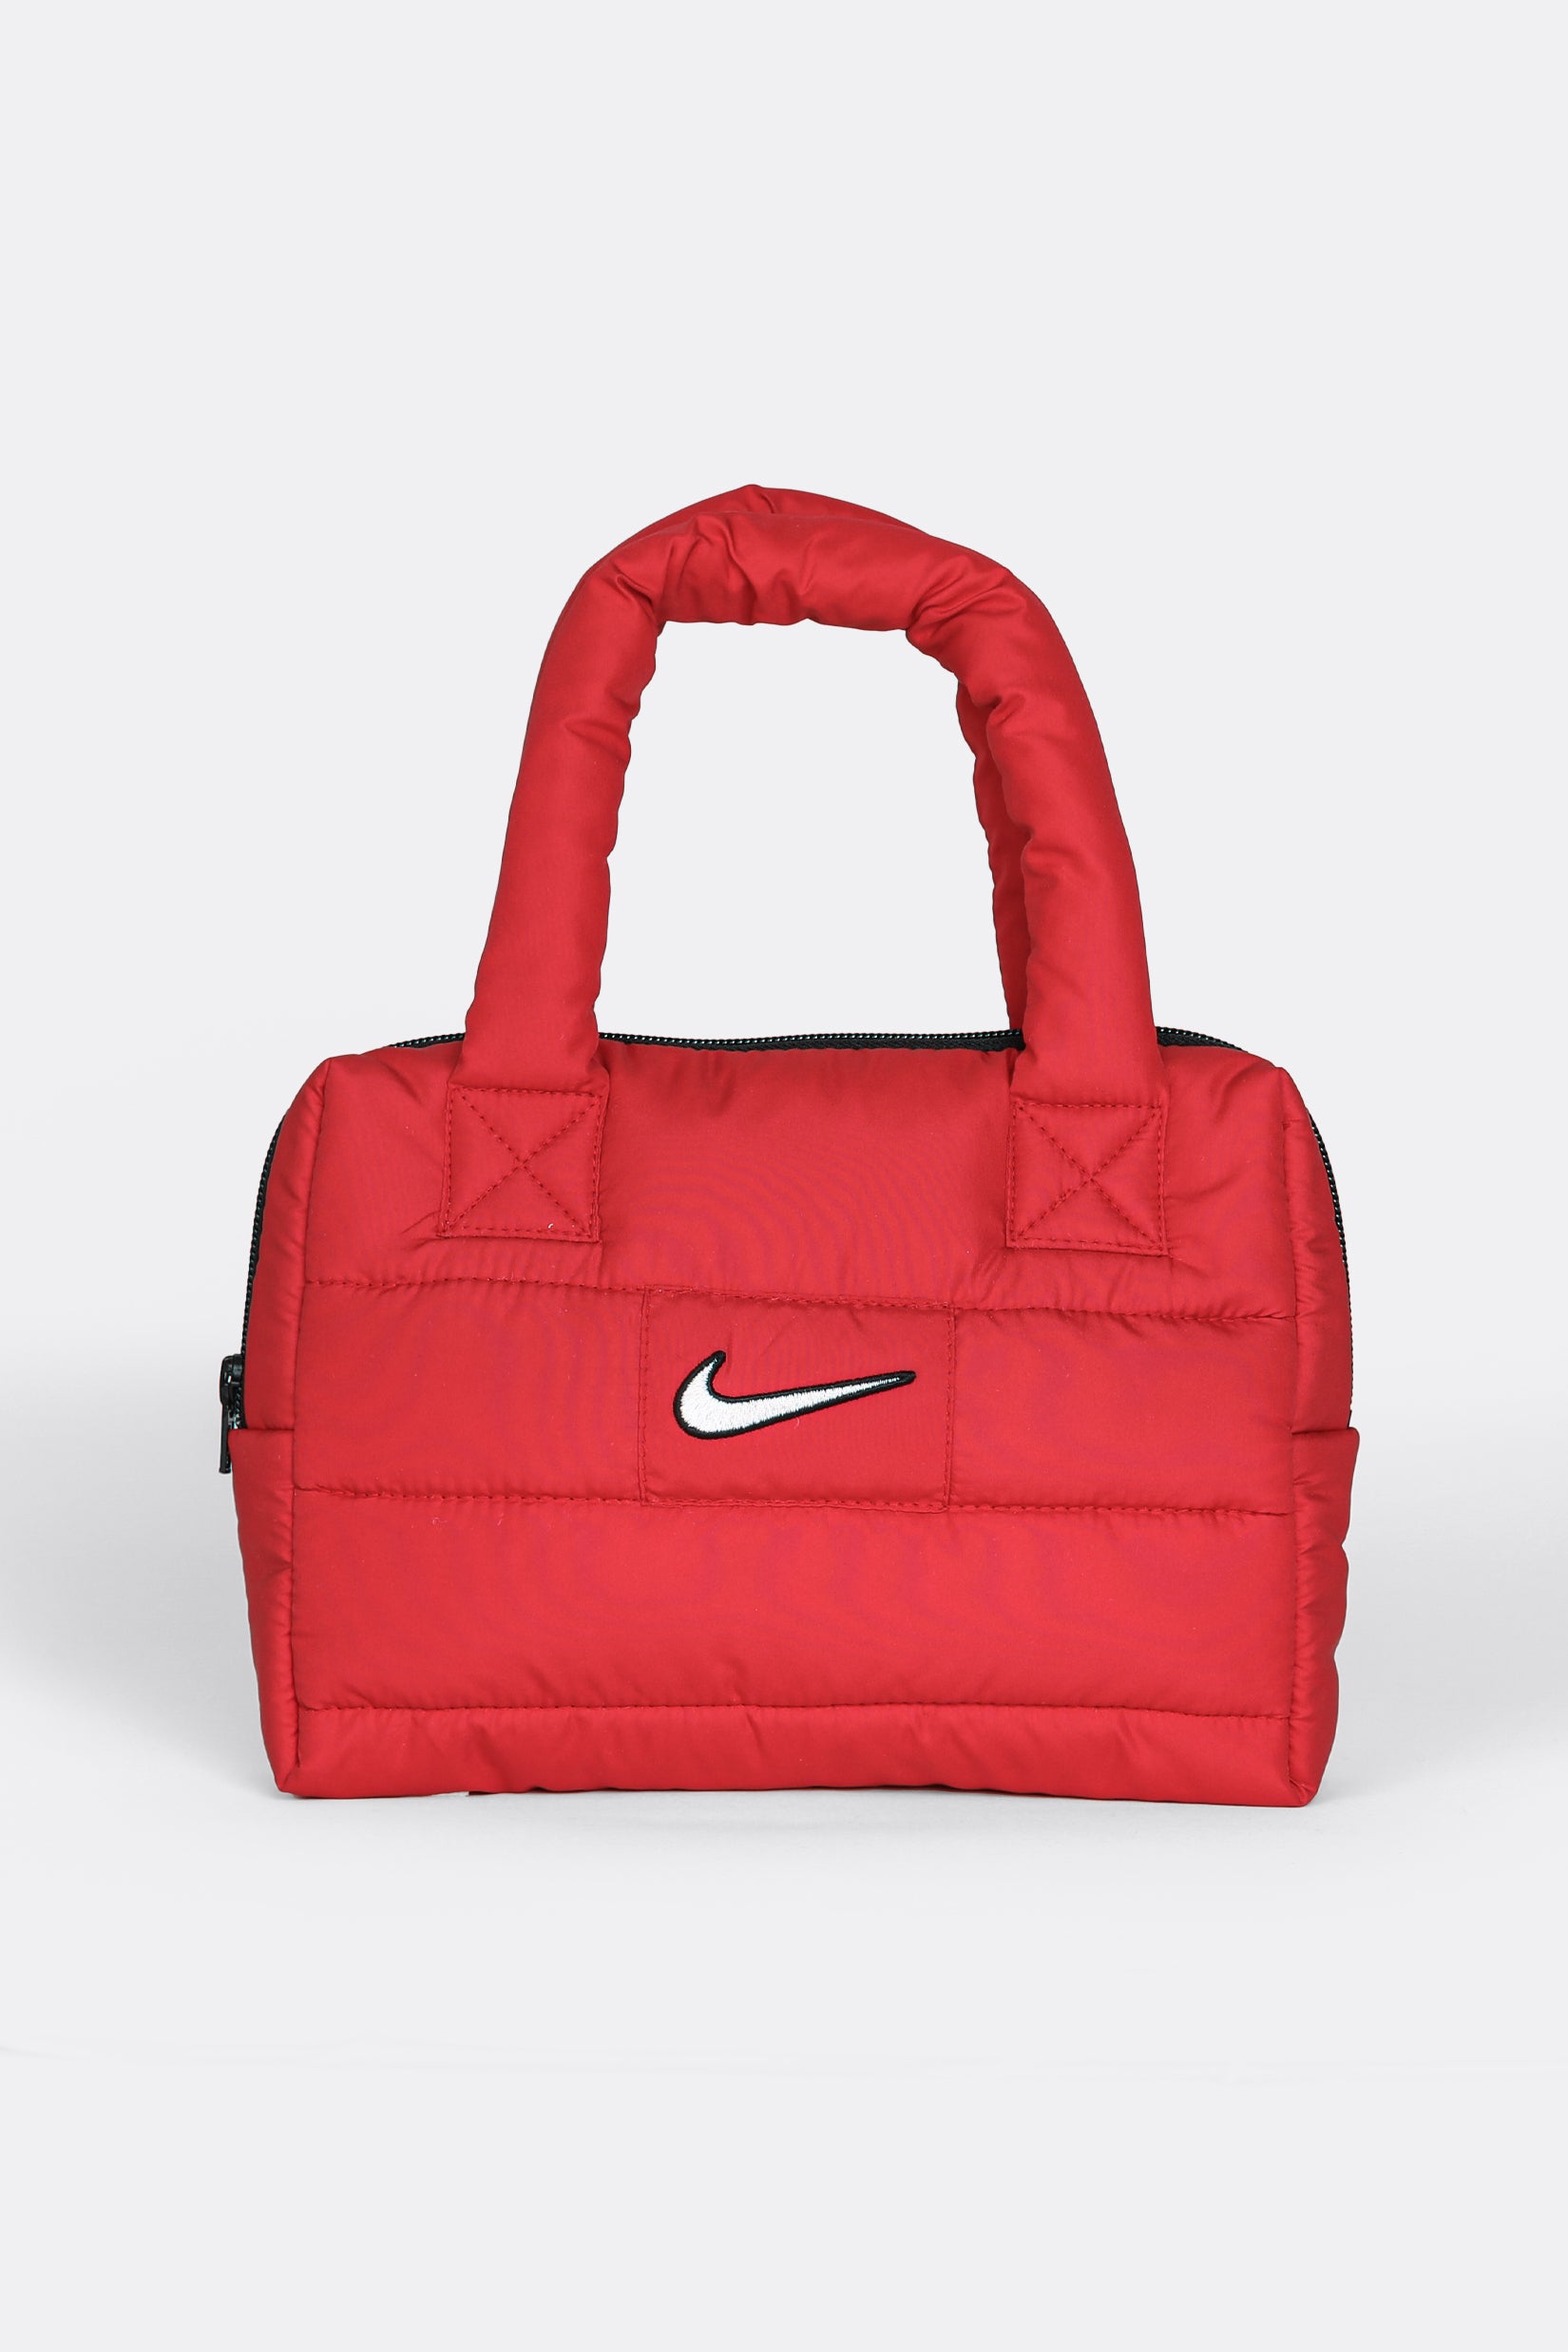 Rework Nike Mini Puffer Bag Frankie